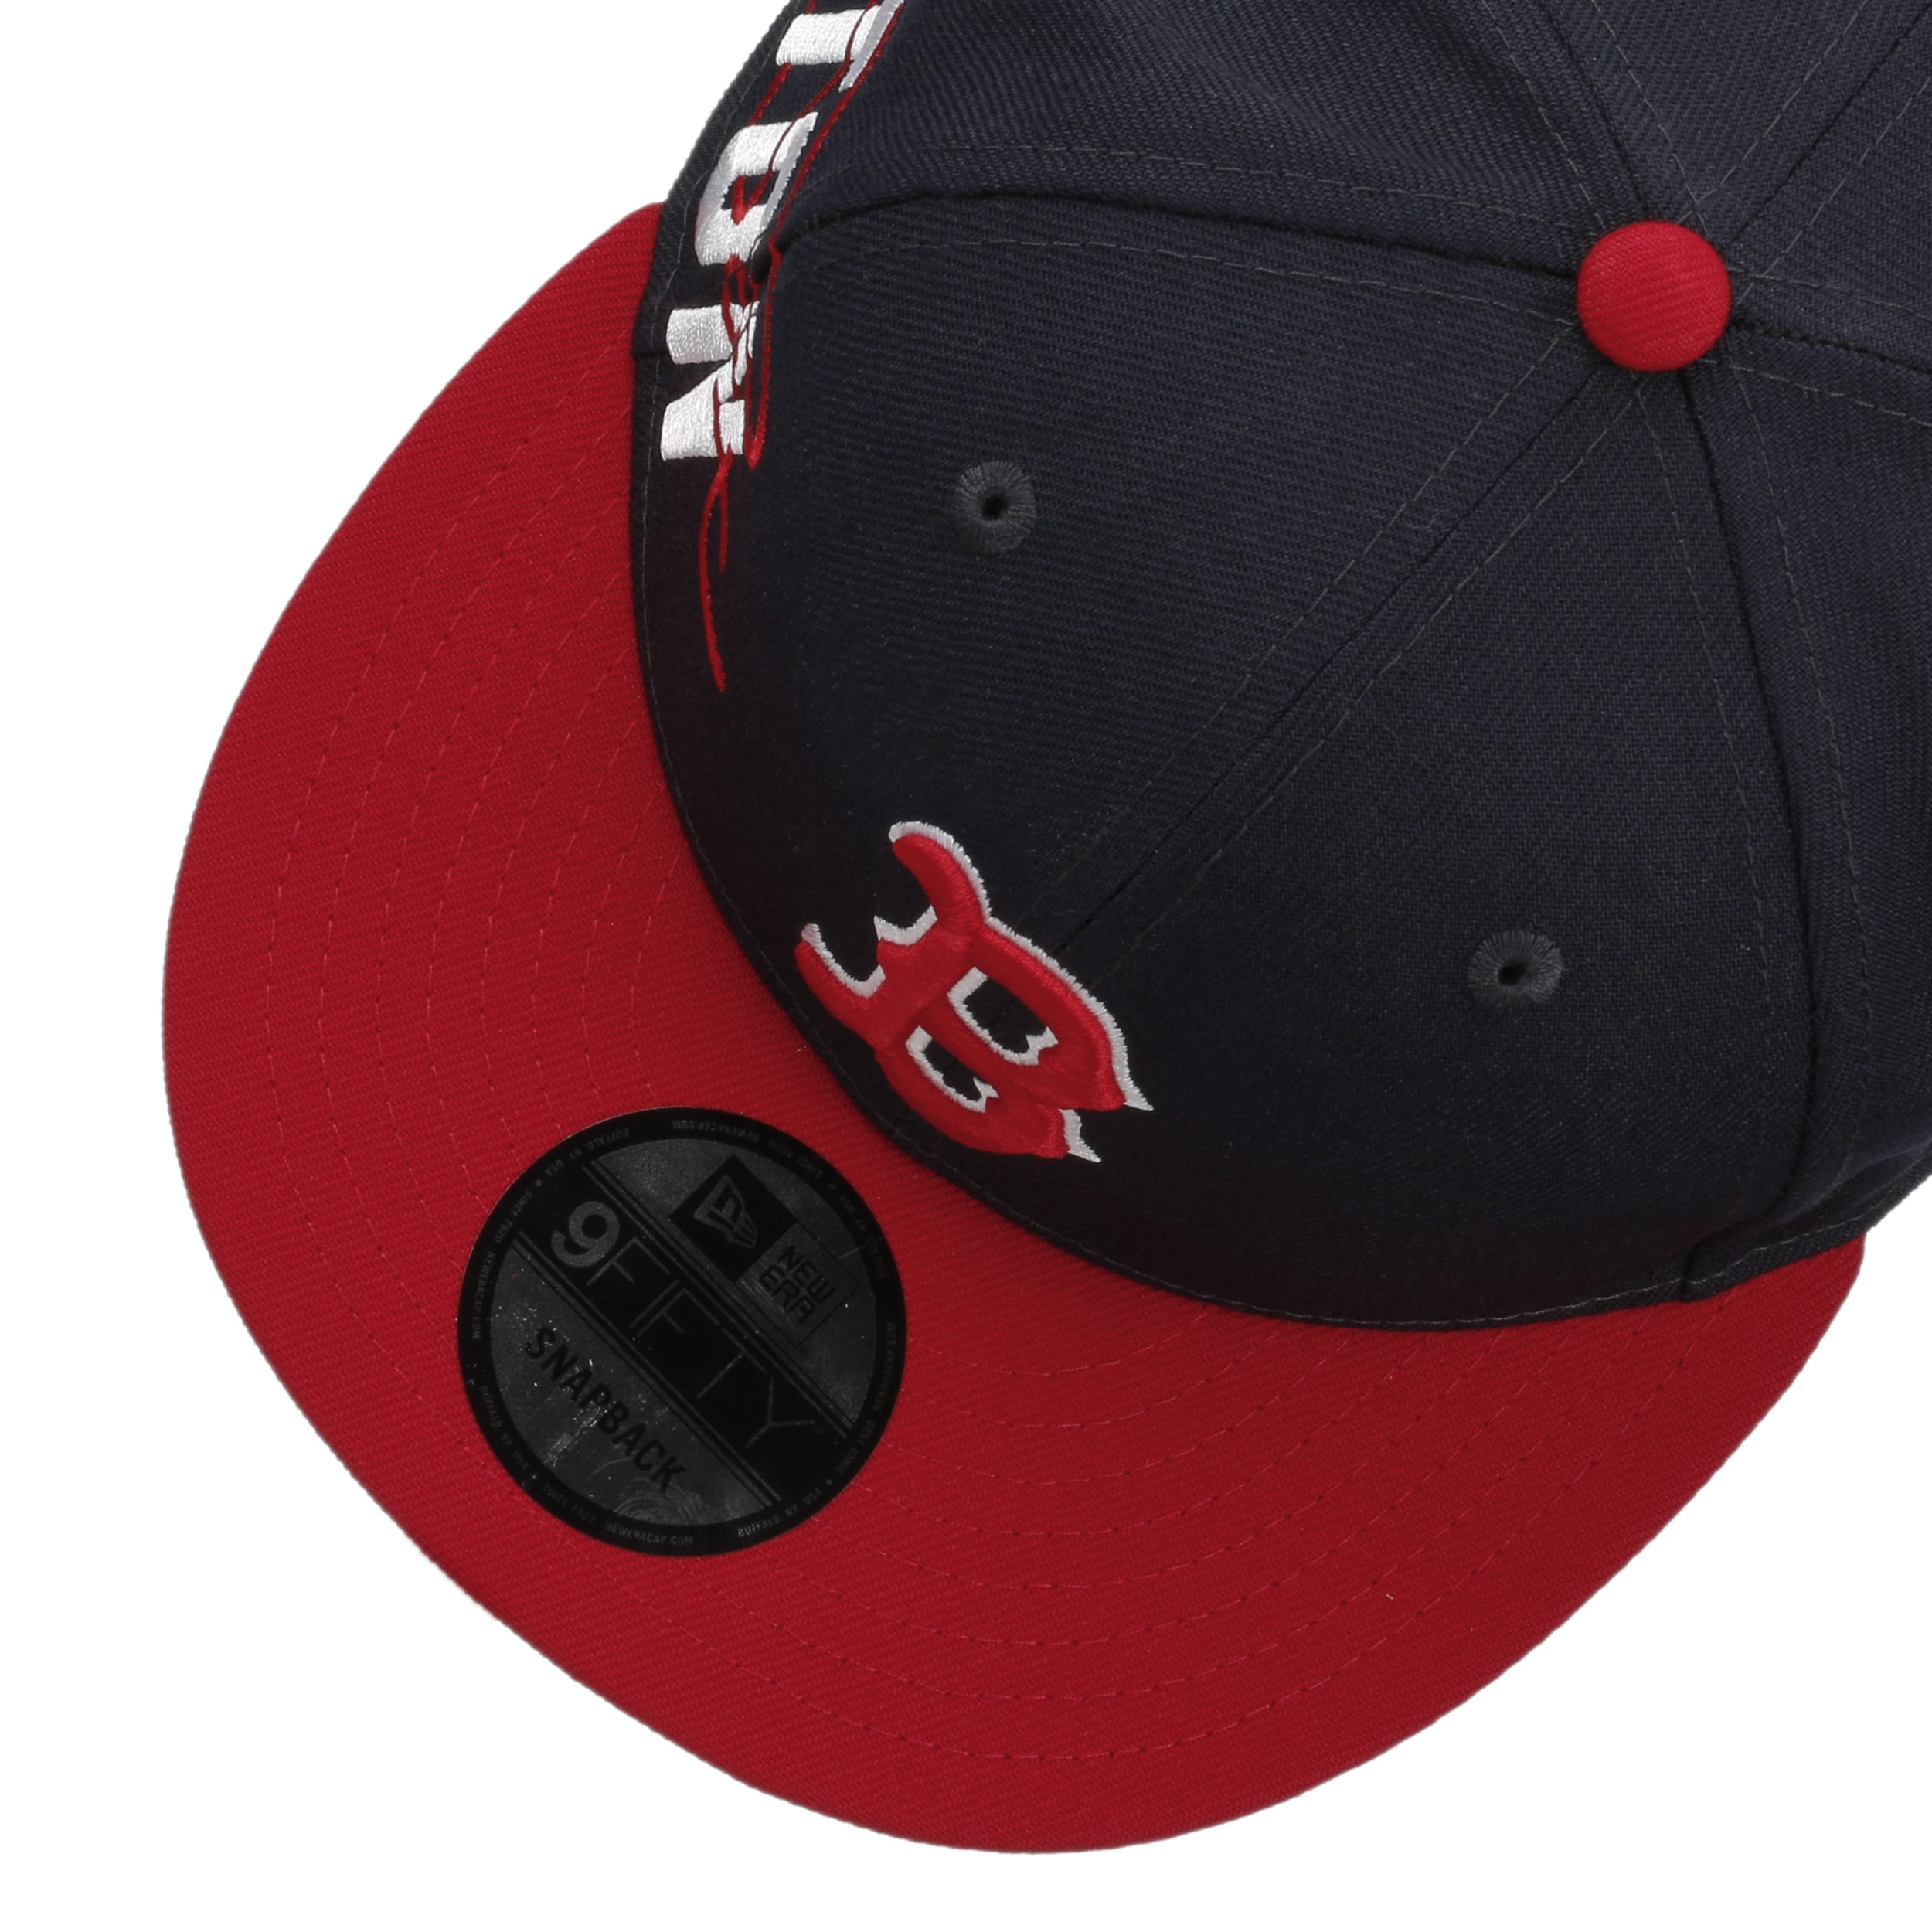 9FIFTY New Era Boston Red Sox Baseball Cap Logo Navy